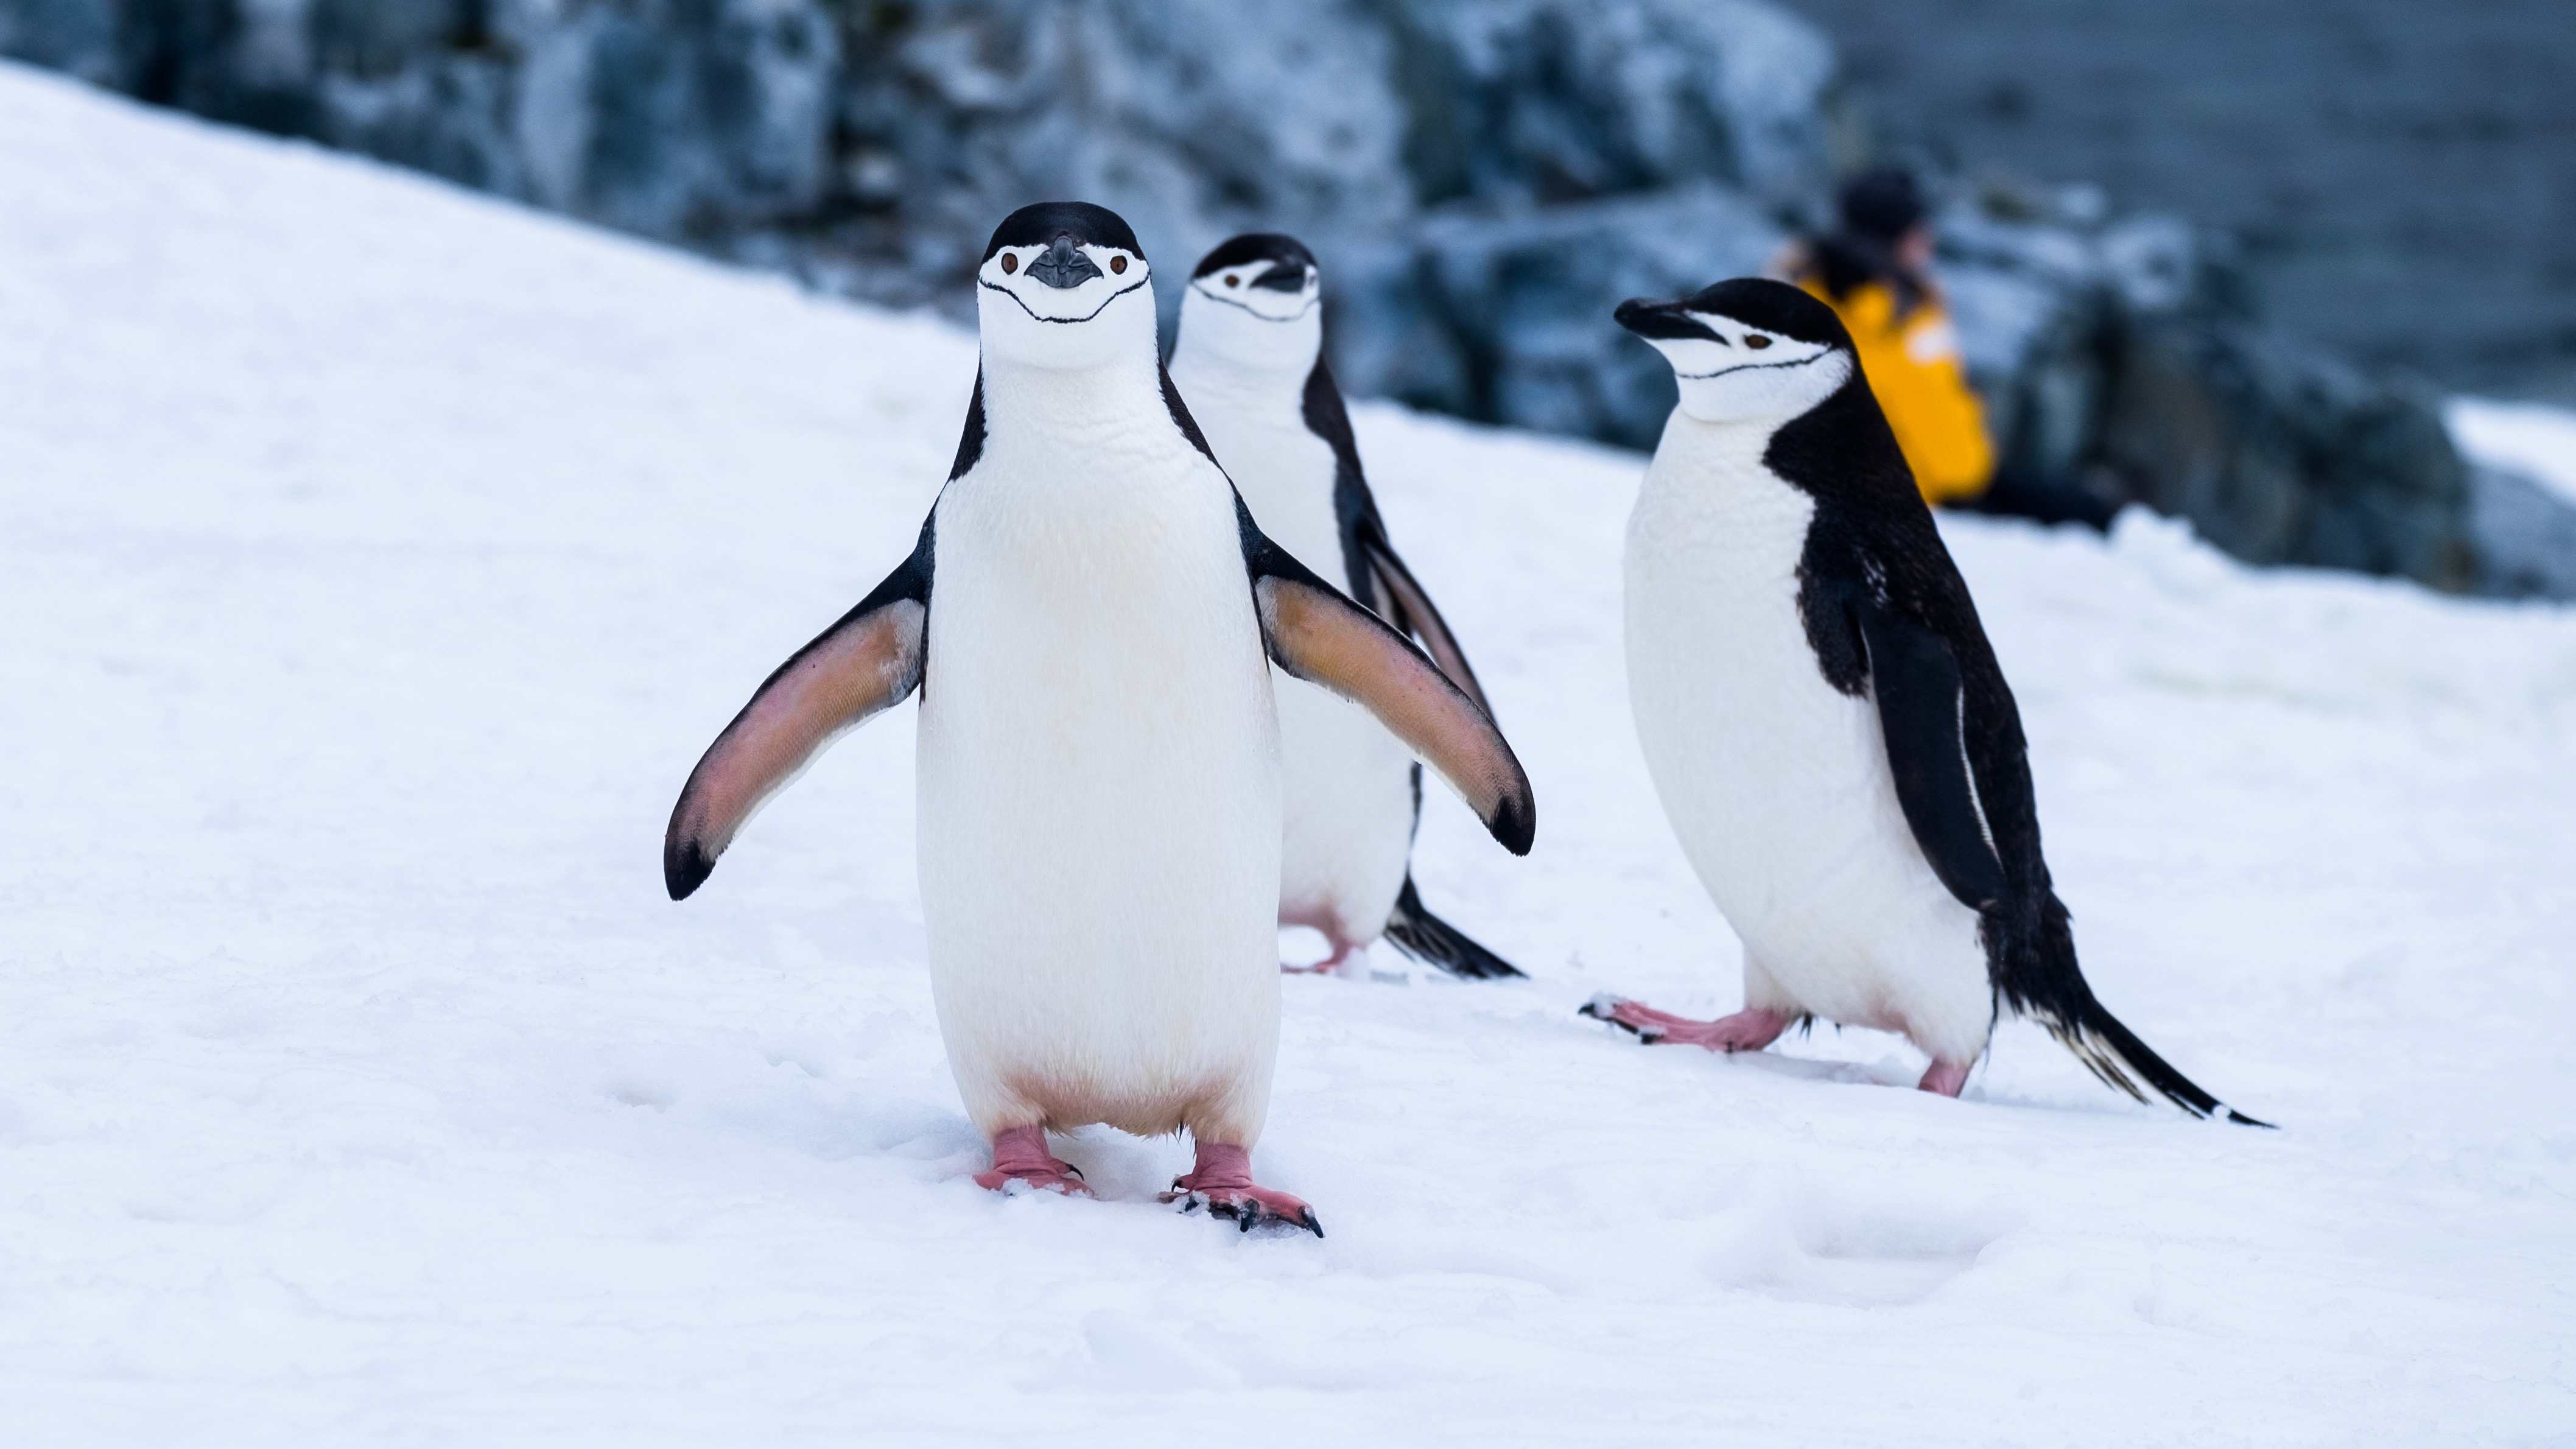 Penguins in Antarctica - Travel Trends